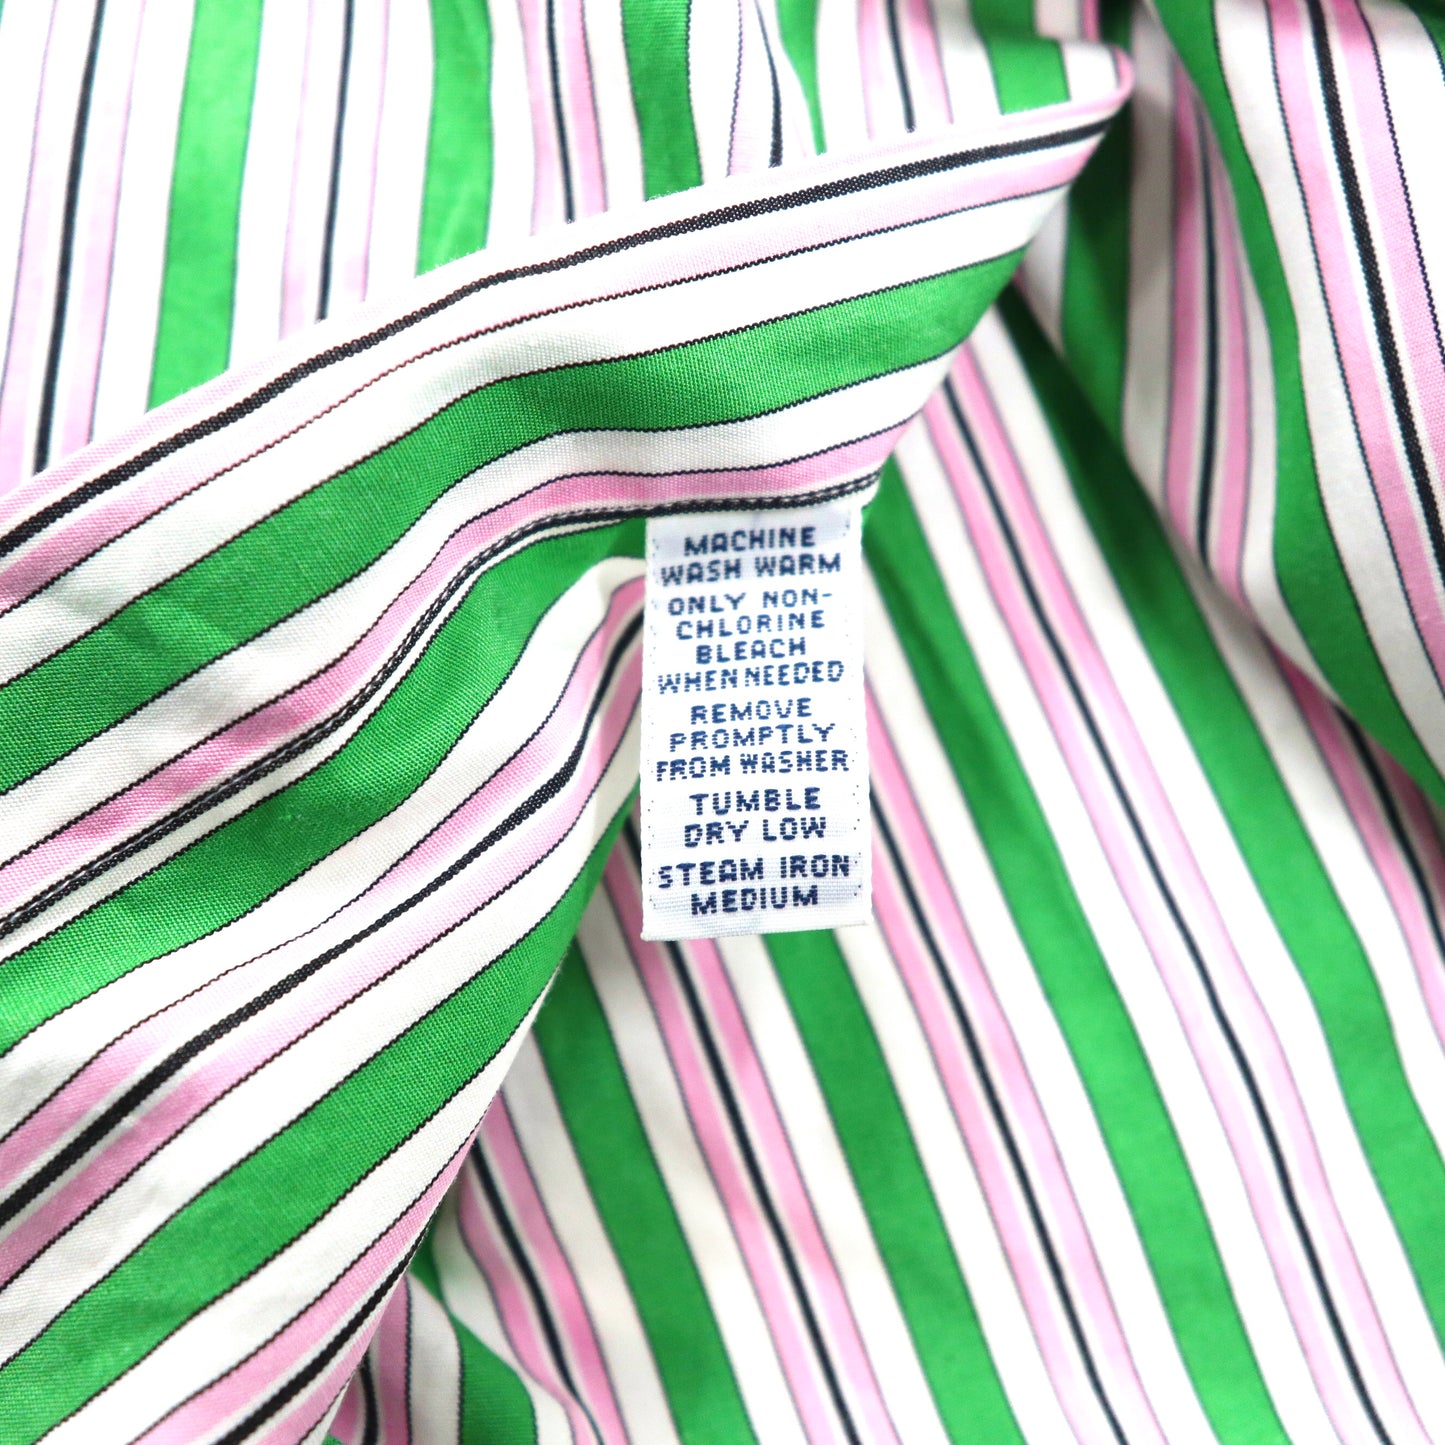 Ralph Lauren ビッグサイズ ボタンダウンシャツ M グリーン ピンク マルチストライプ コットン CLASSIC FIT スモールポニー刺繍